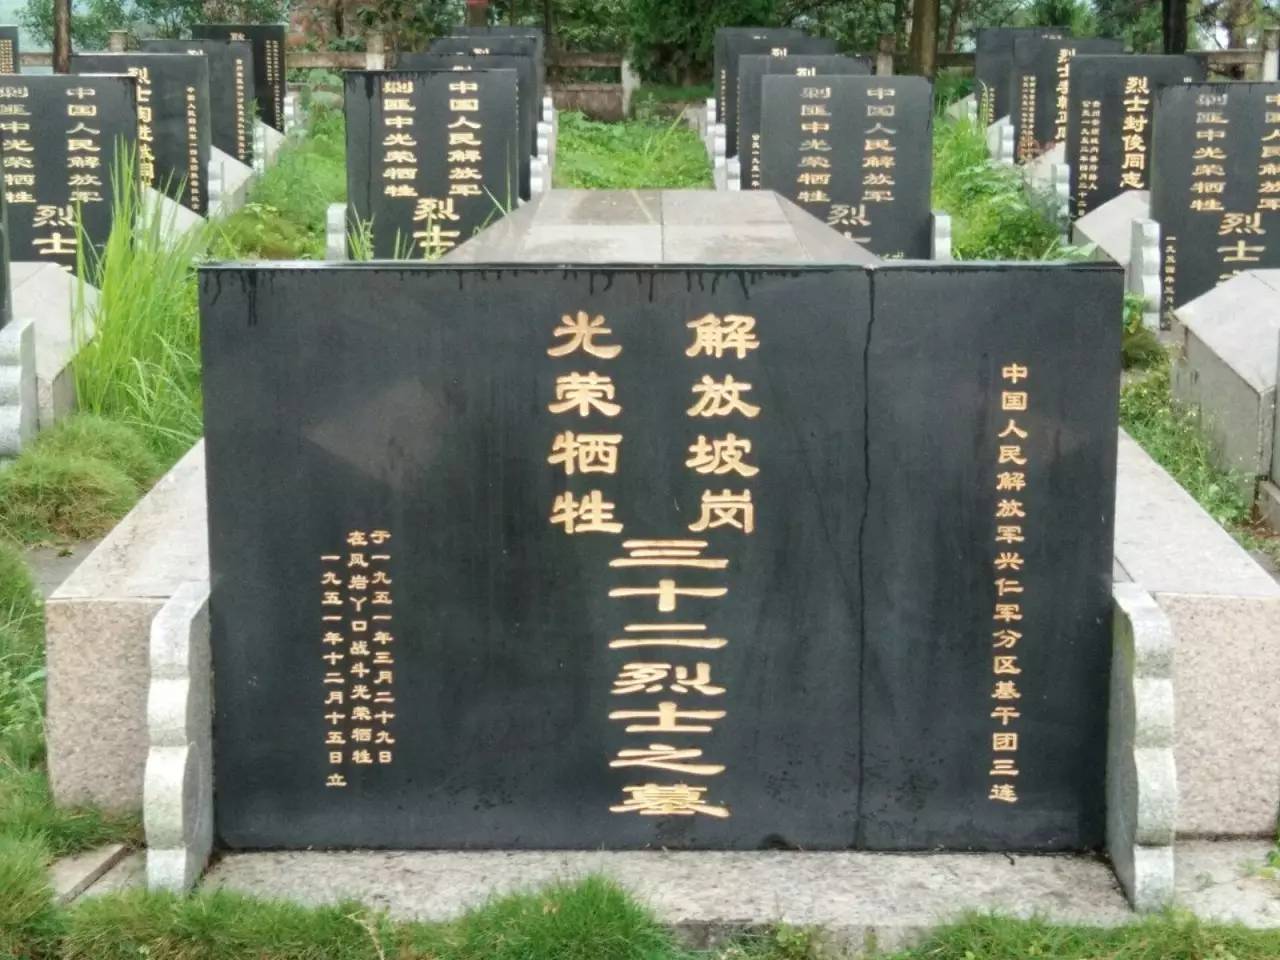 兴义烈士陵园32人烈士图片